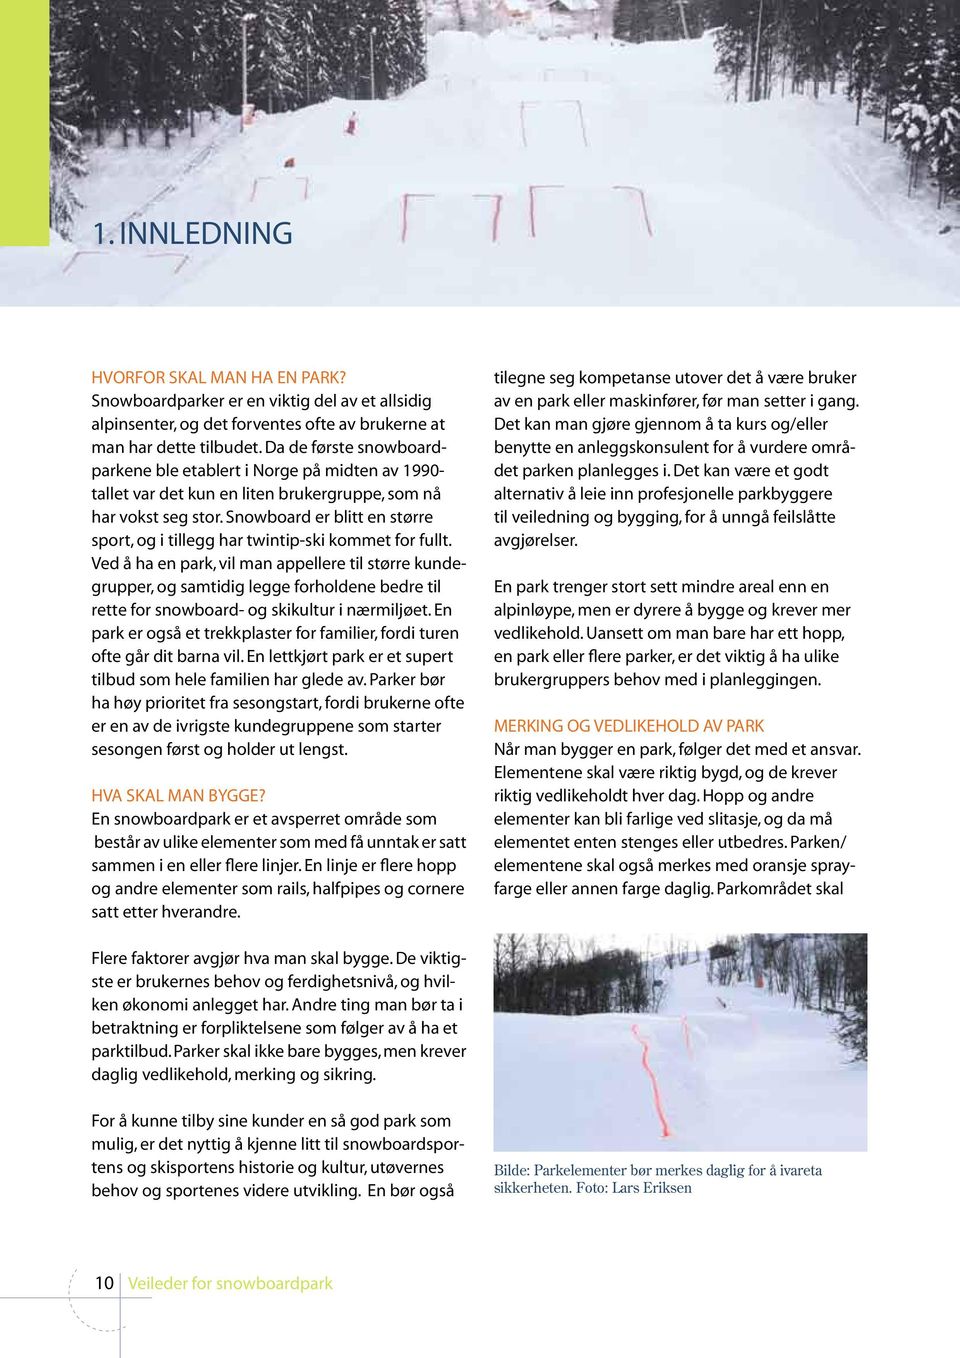 Snowboard er blitt en større sport, og i tillegg har twintip-ski kommet for fullt.